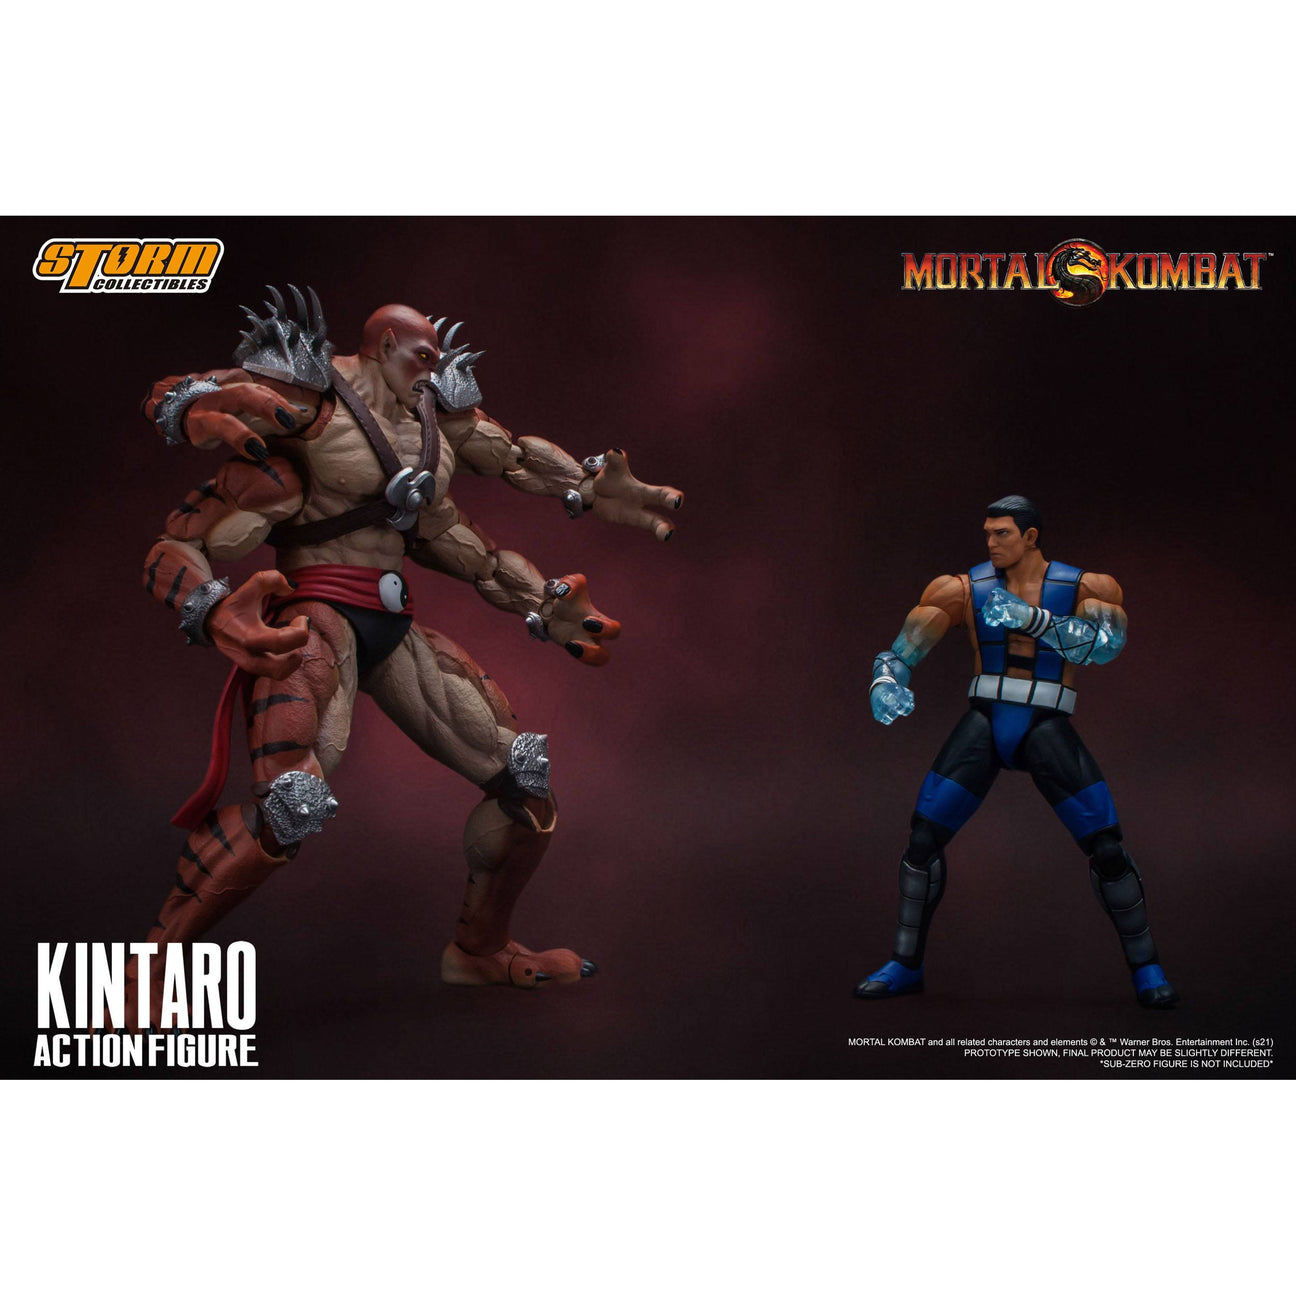 Mortal Kombat: Kintaro 1/12-Actionfiguren-Storm Collectibles-Mighty Underground